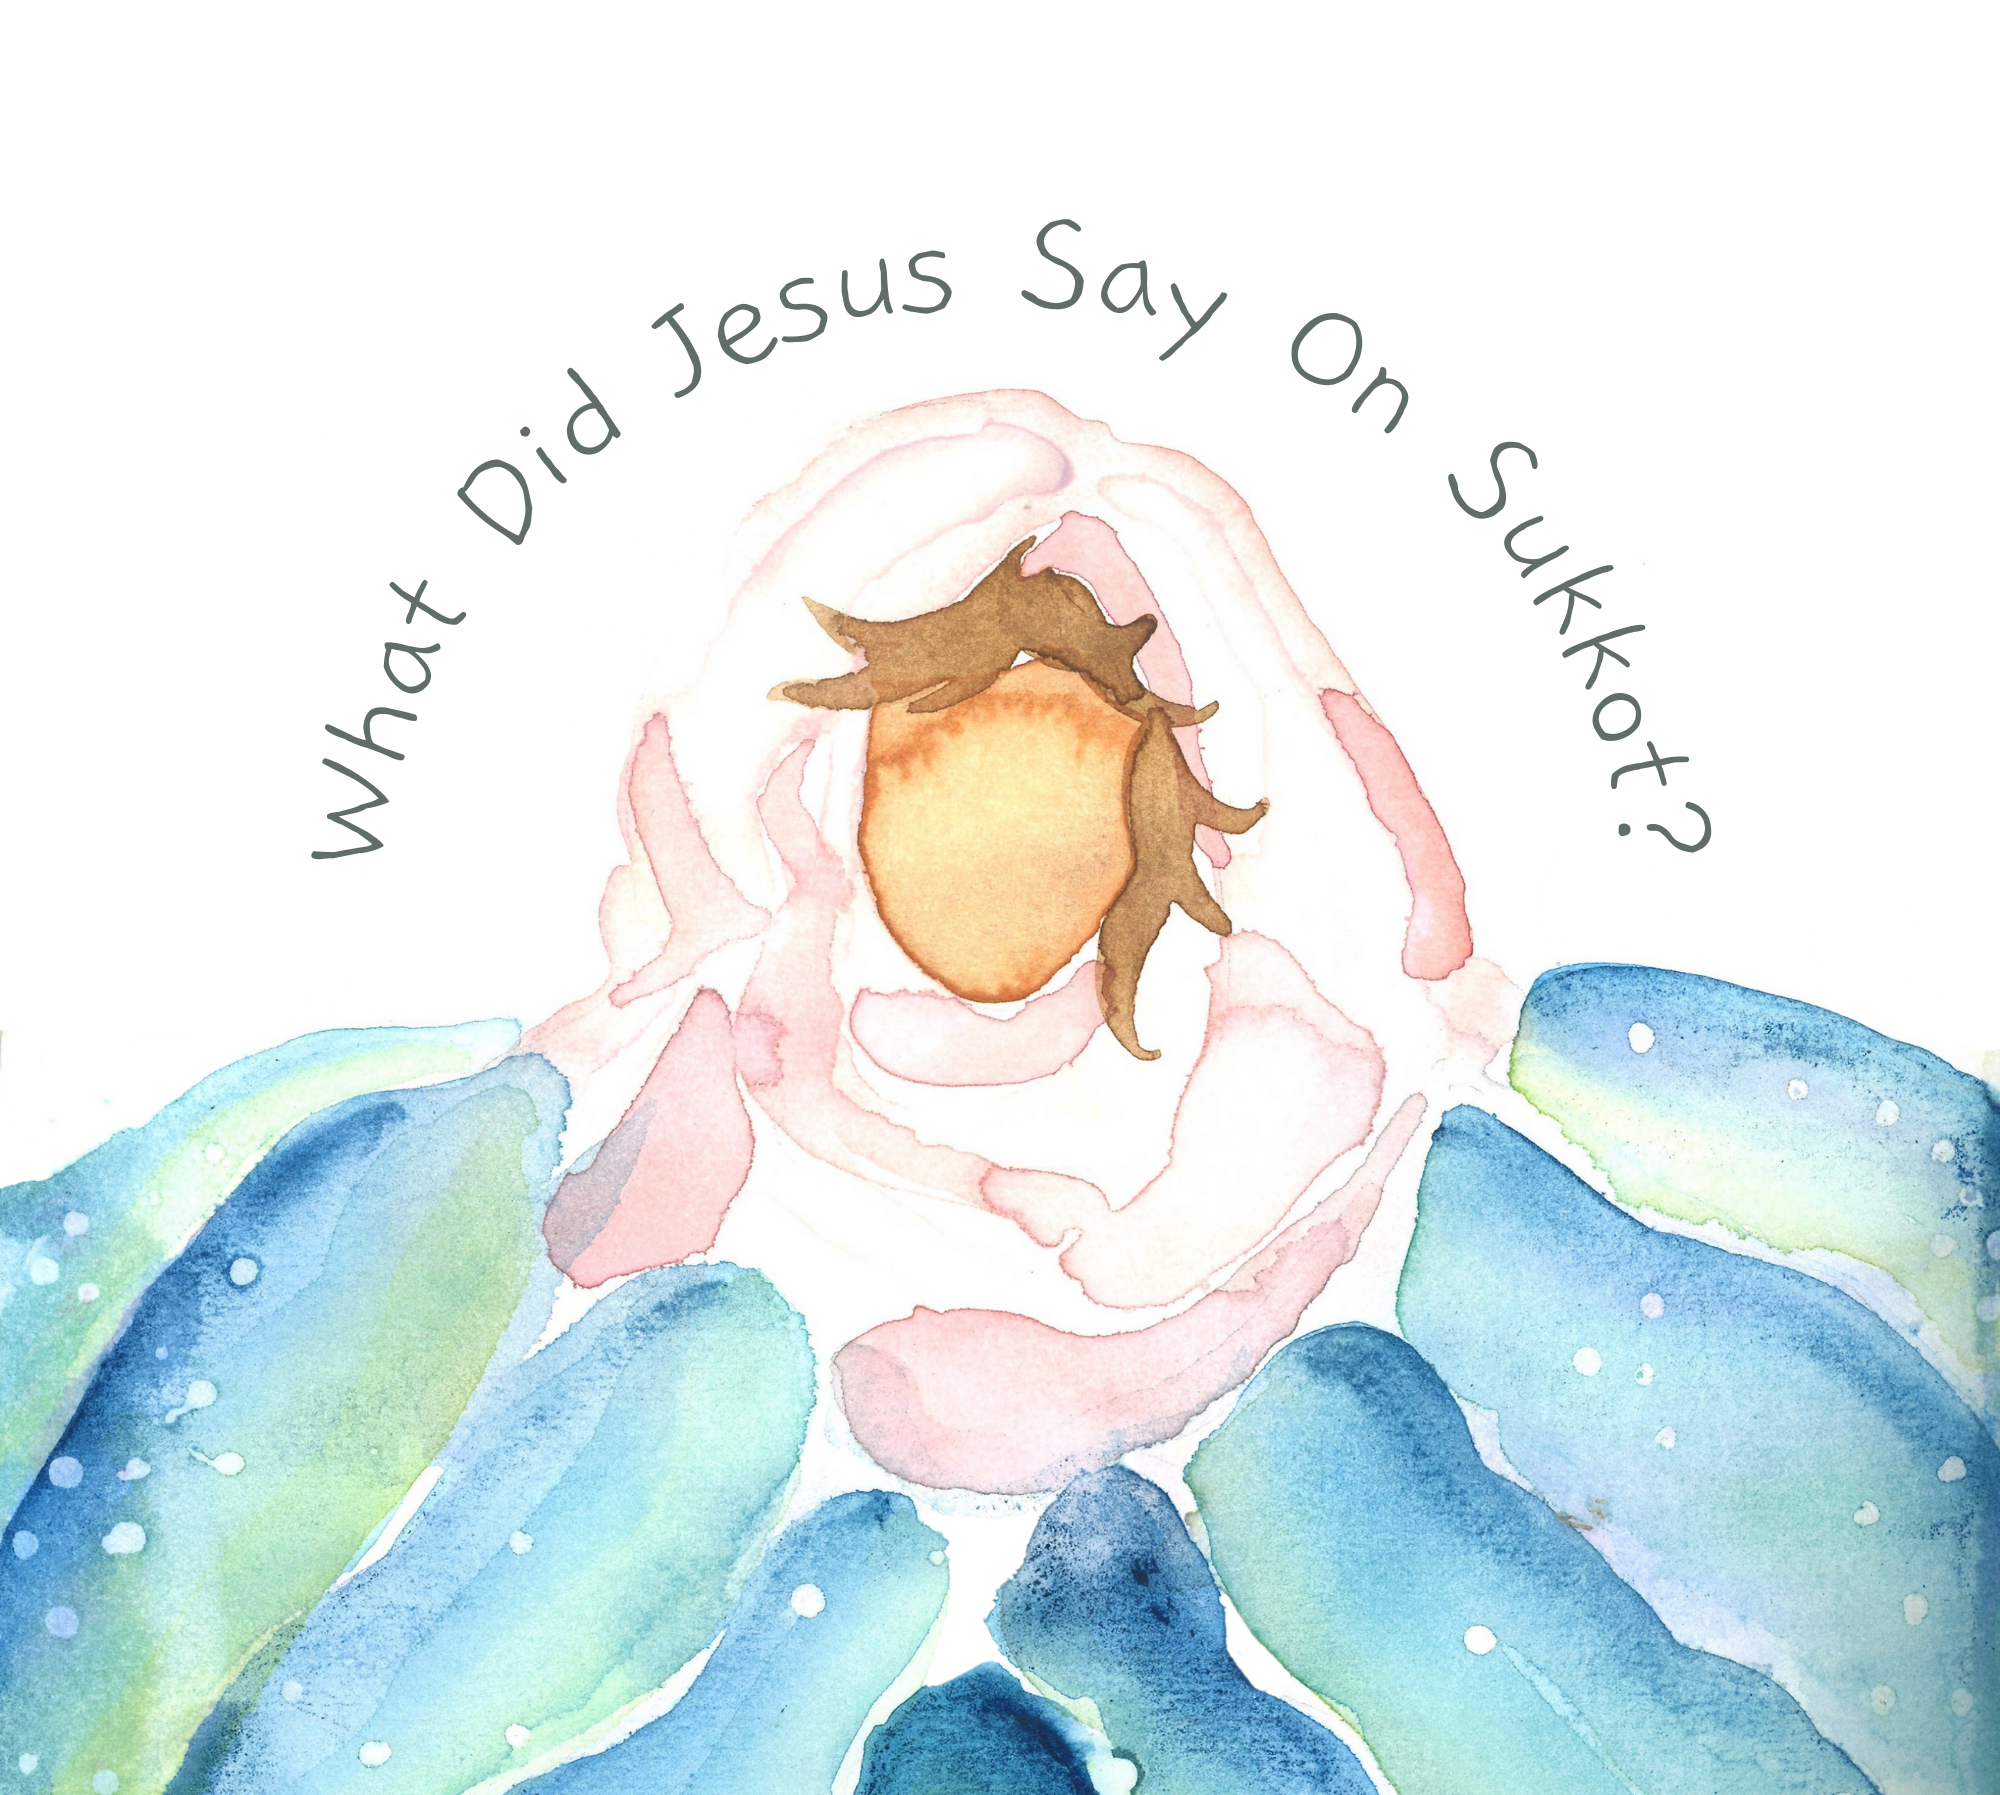 What did Jesus say on Sukkot?